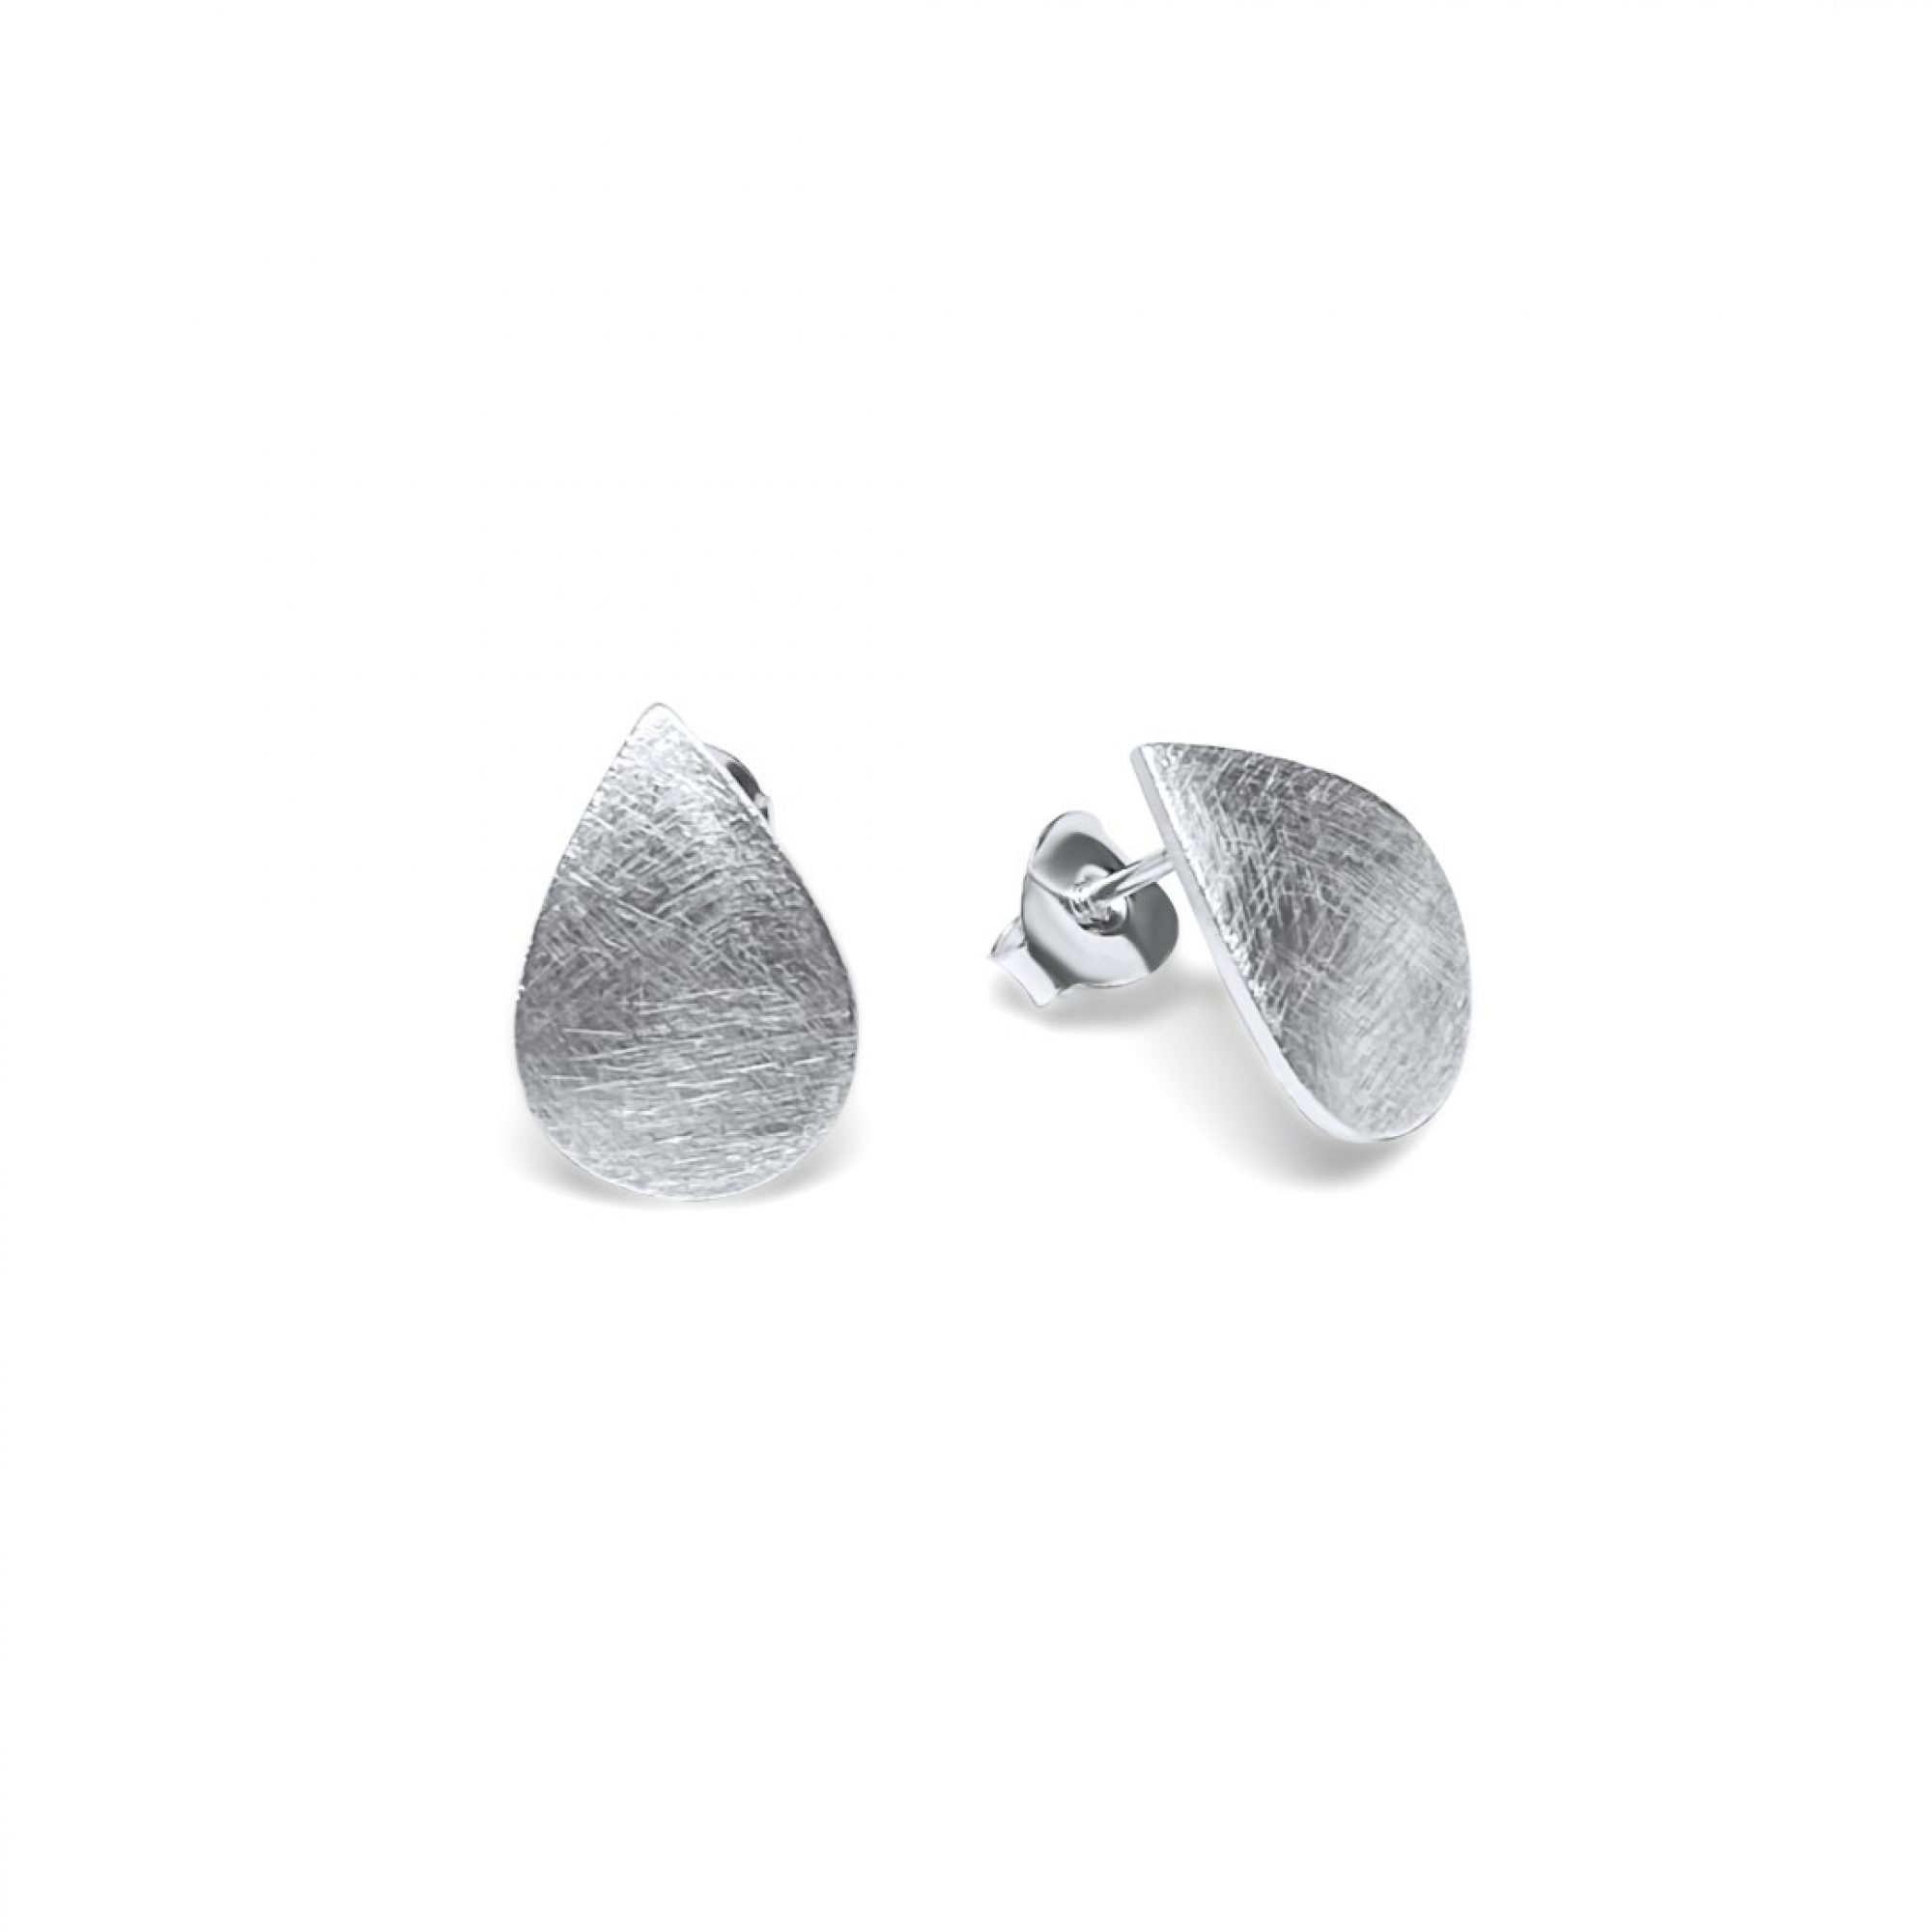 Engraved stud earrings